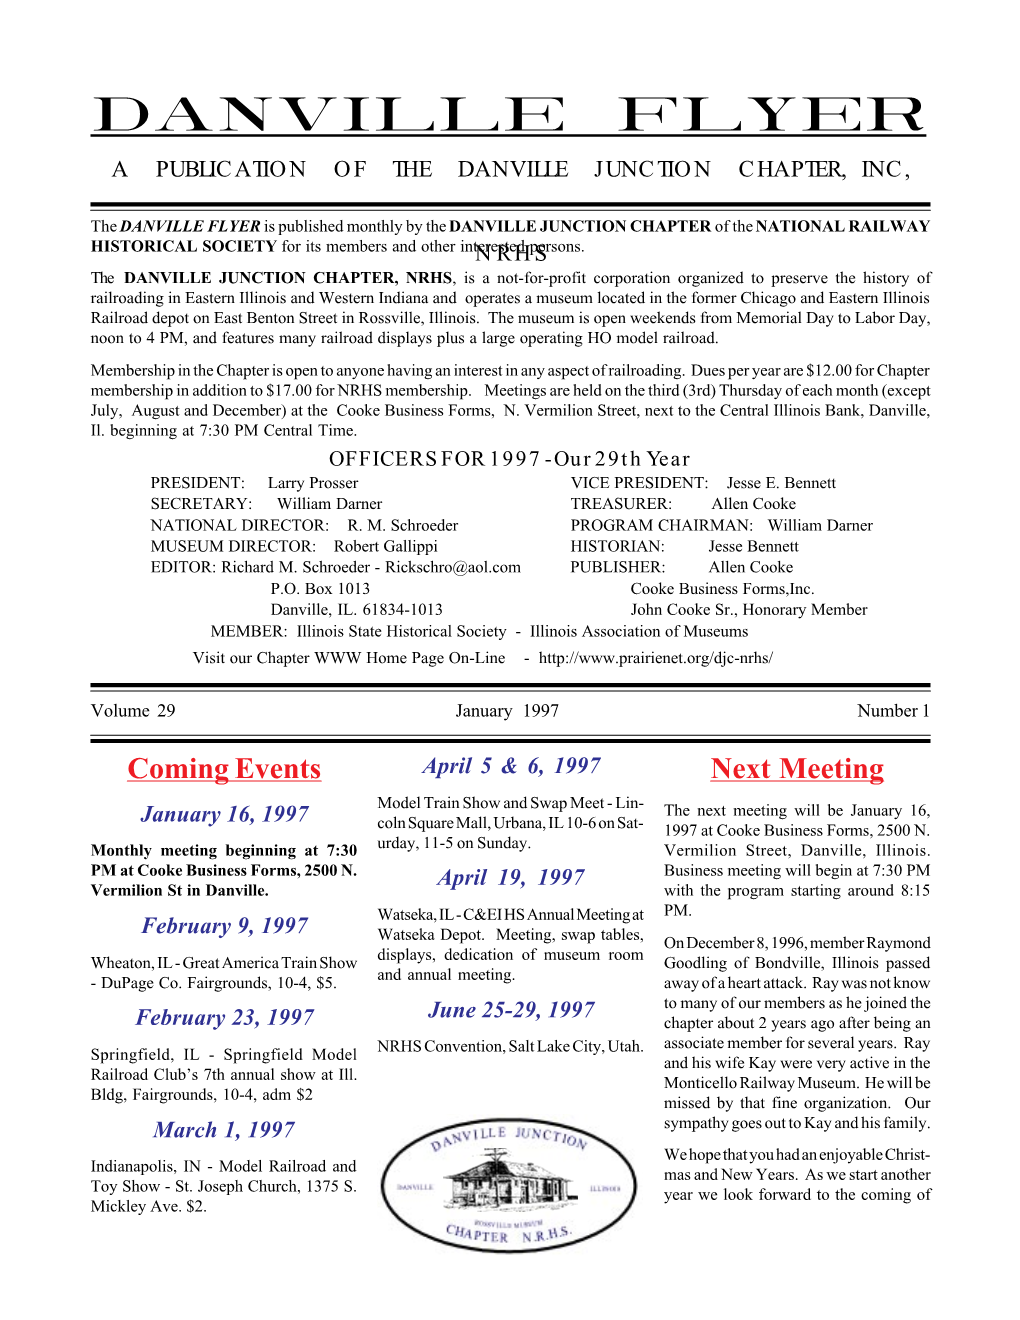 Danville Flyer a Publication of the Danville Junction Chapter, Inc